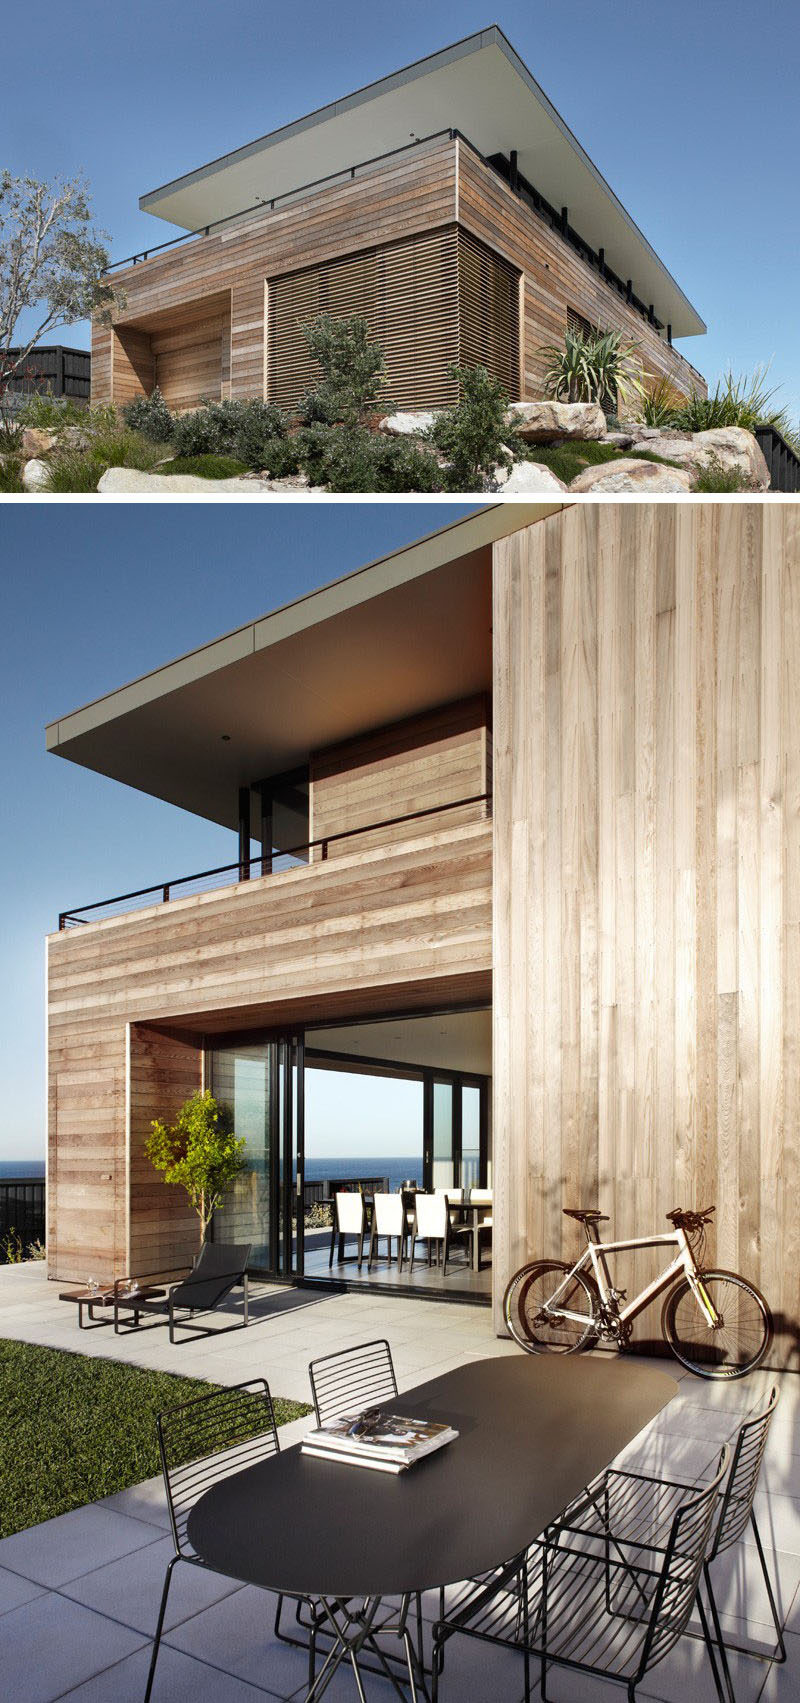 14 примеров современных пляжных домиков // Панели из светлого дерева покрывают фасад австралийского пляжного домика, который широко открывается, открывая невероятные виды на пляж.